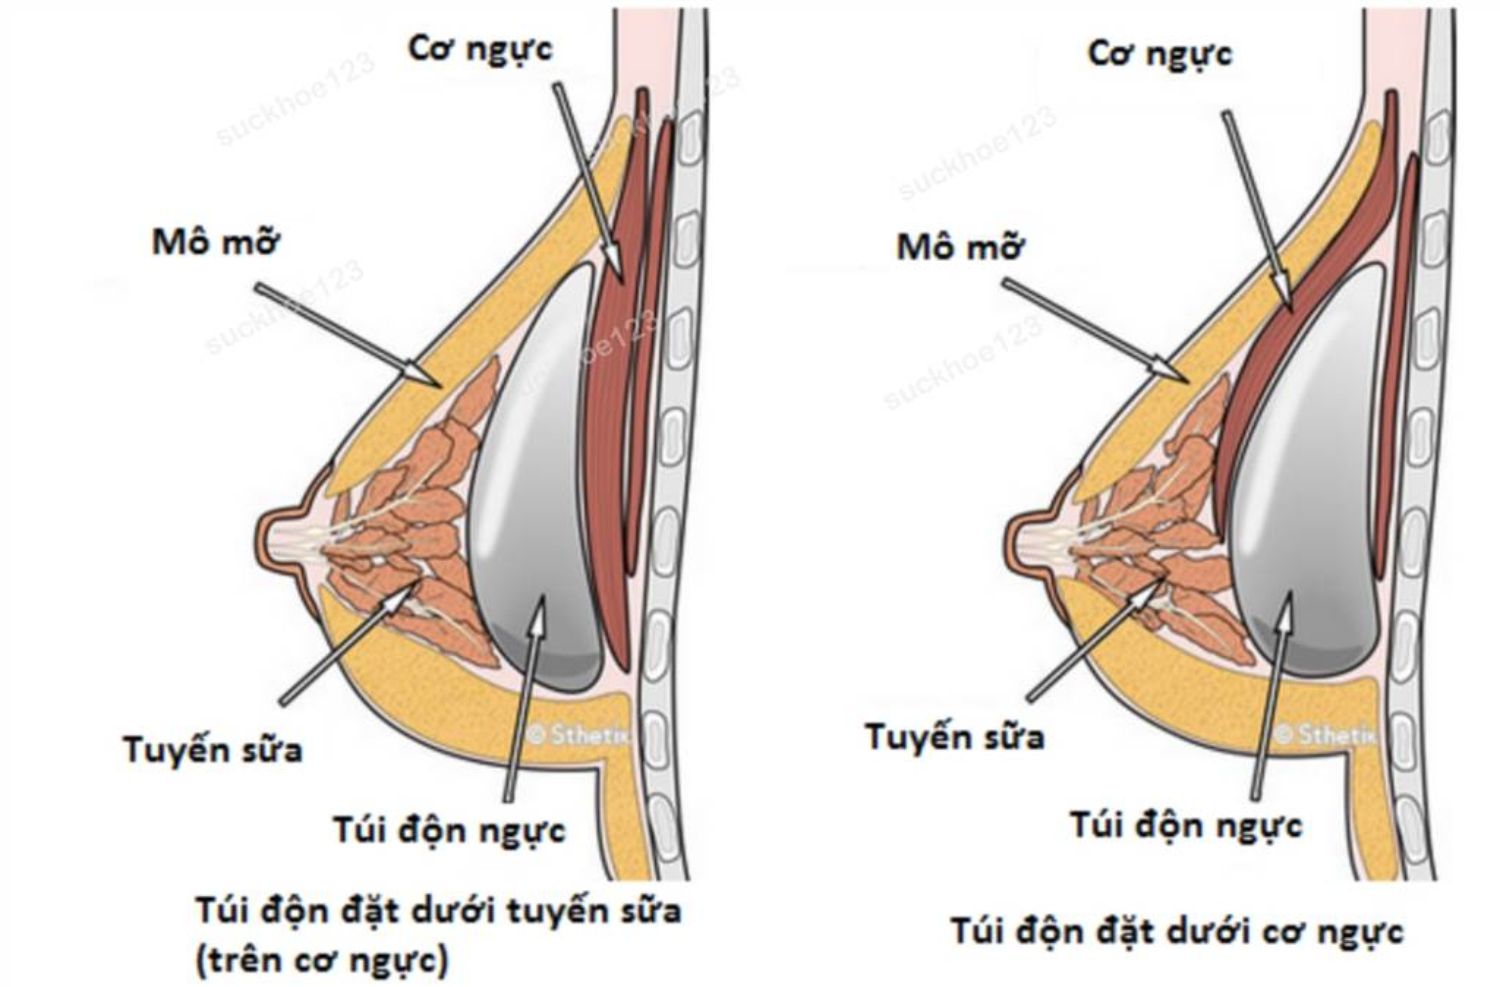 Vị trí khoang chứa túi độn ngực: trên hay dưới cơ